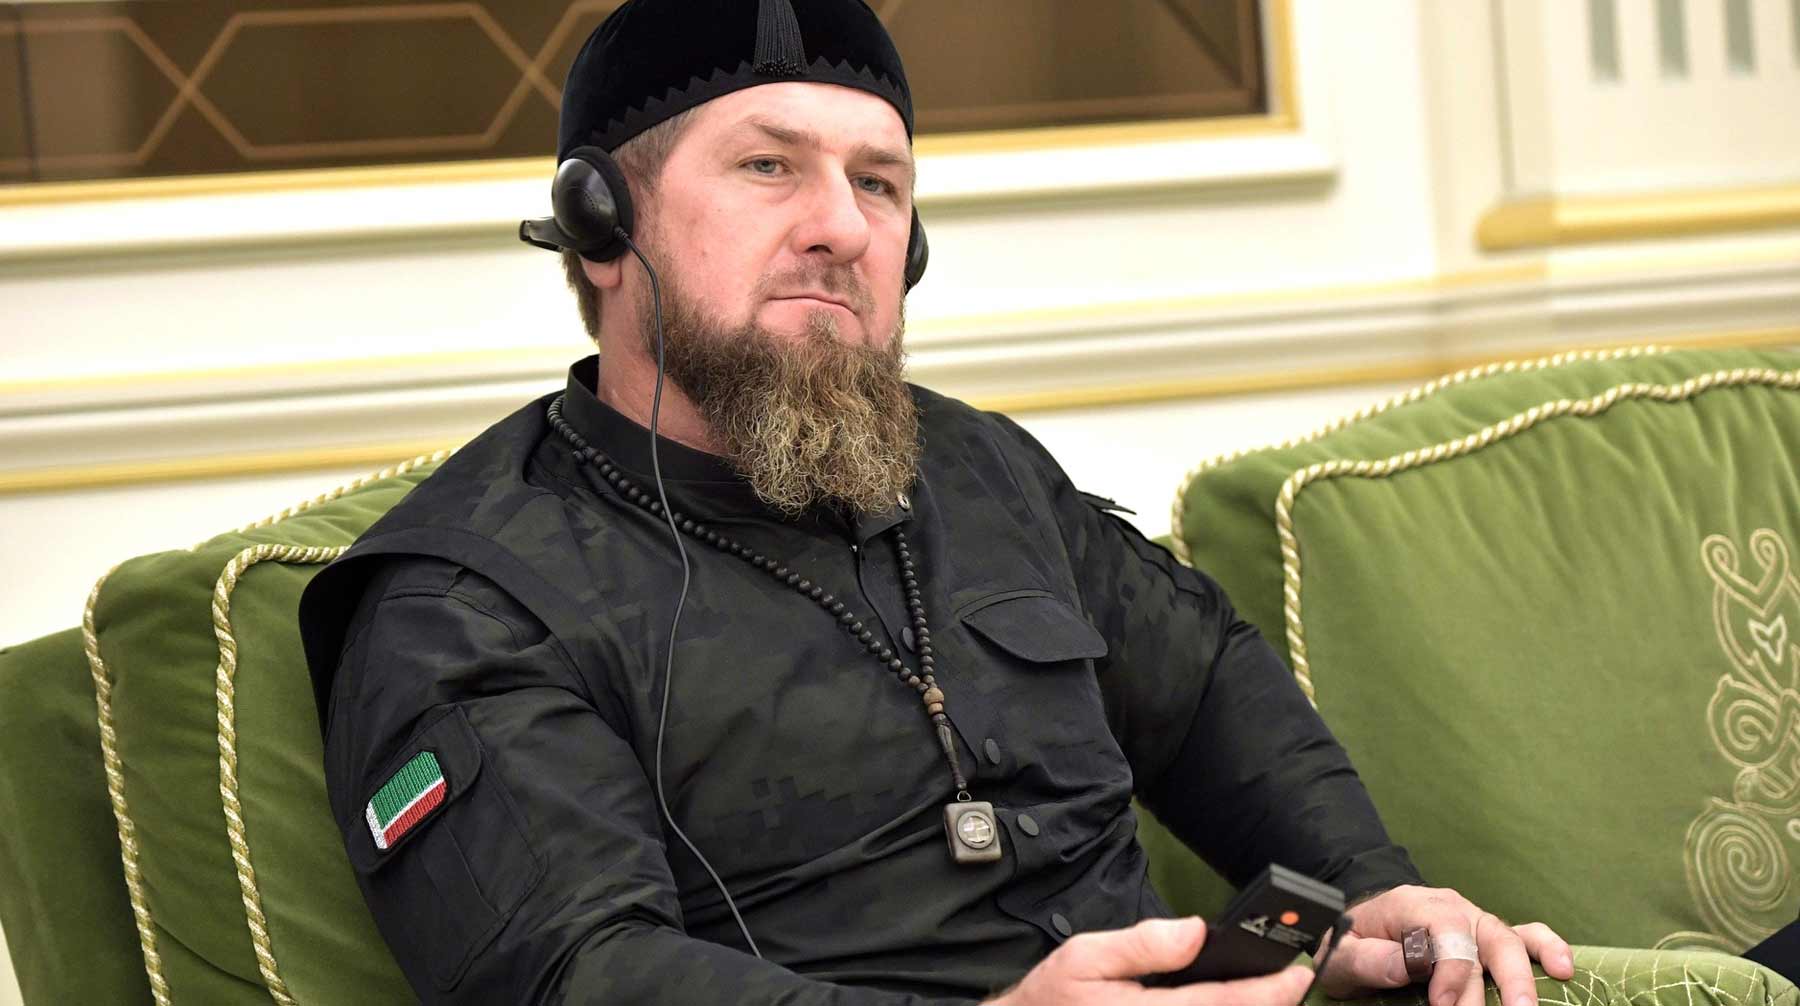 Глава Чечни говорил о террористах и экстремистах, которые ложью пытаются внести раскол в общество, отметил парламентарий Фото: © Global Look Press